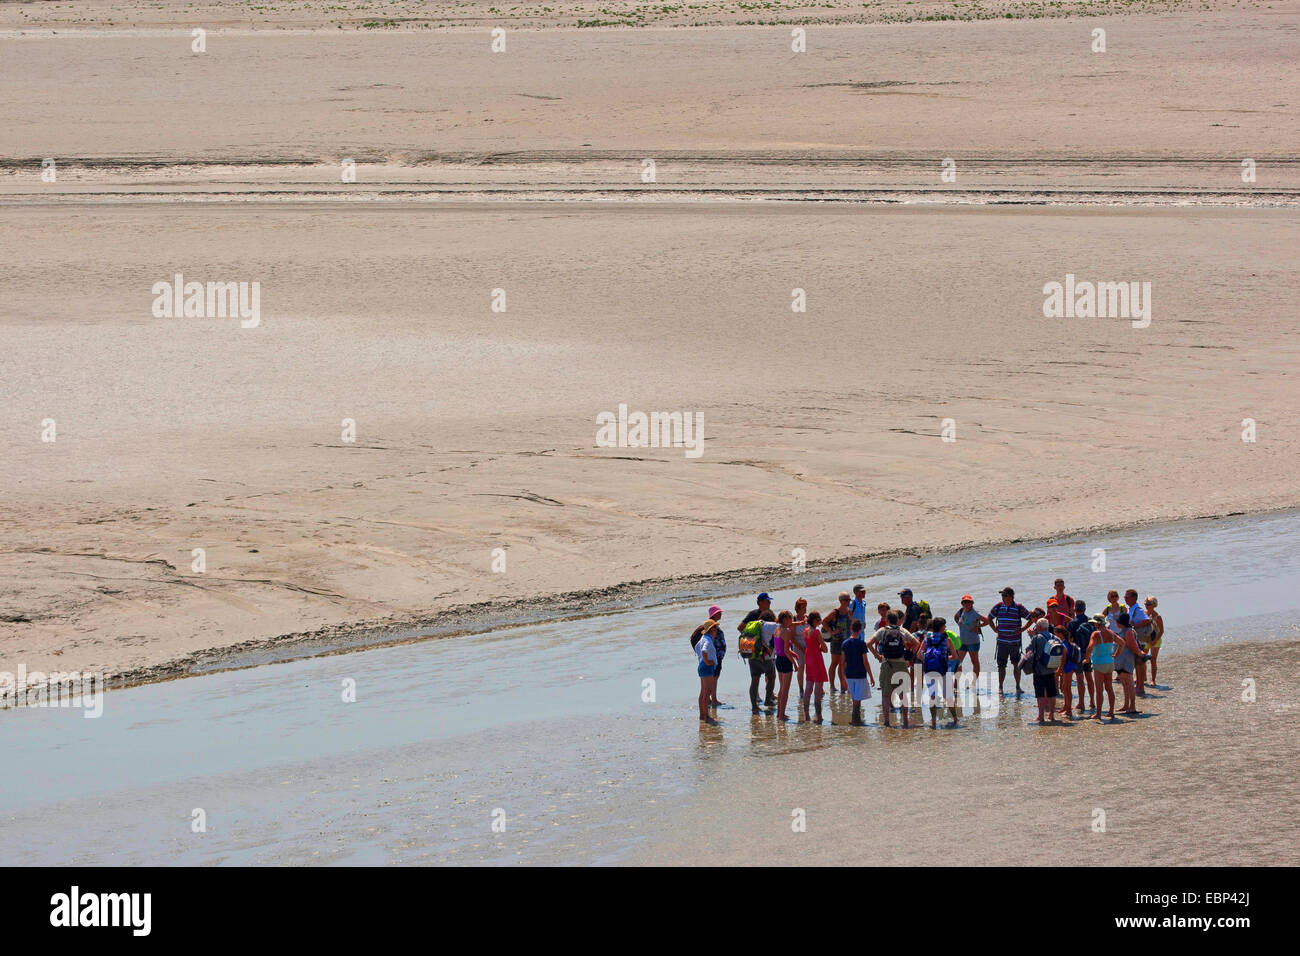 Piane di marea escursionismo a bassa marea sulla sabbia estuario, Francia, Brittany Foto Stock